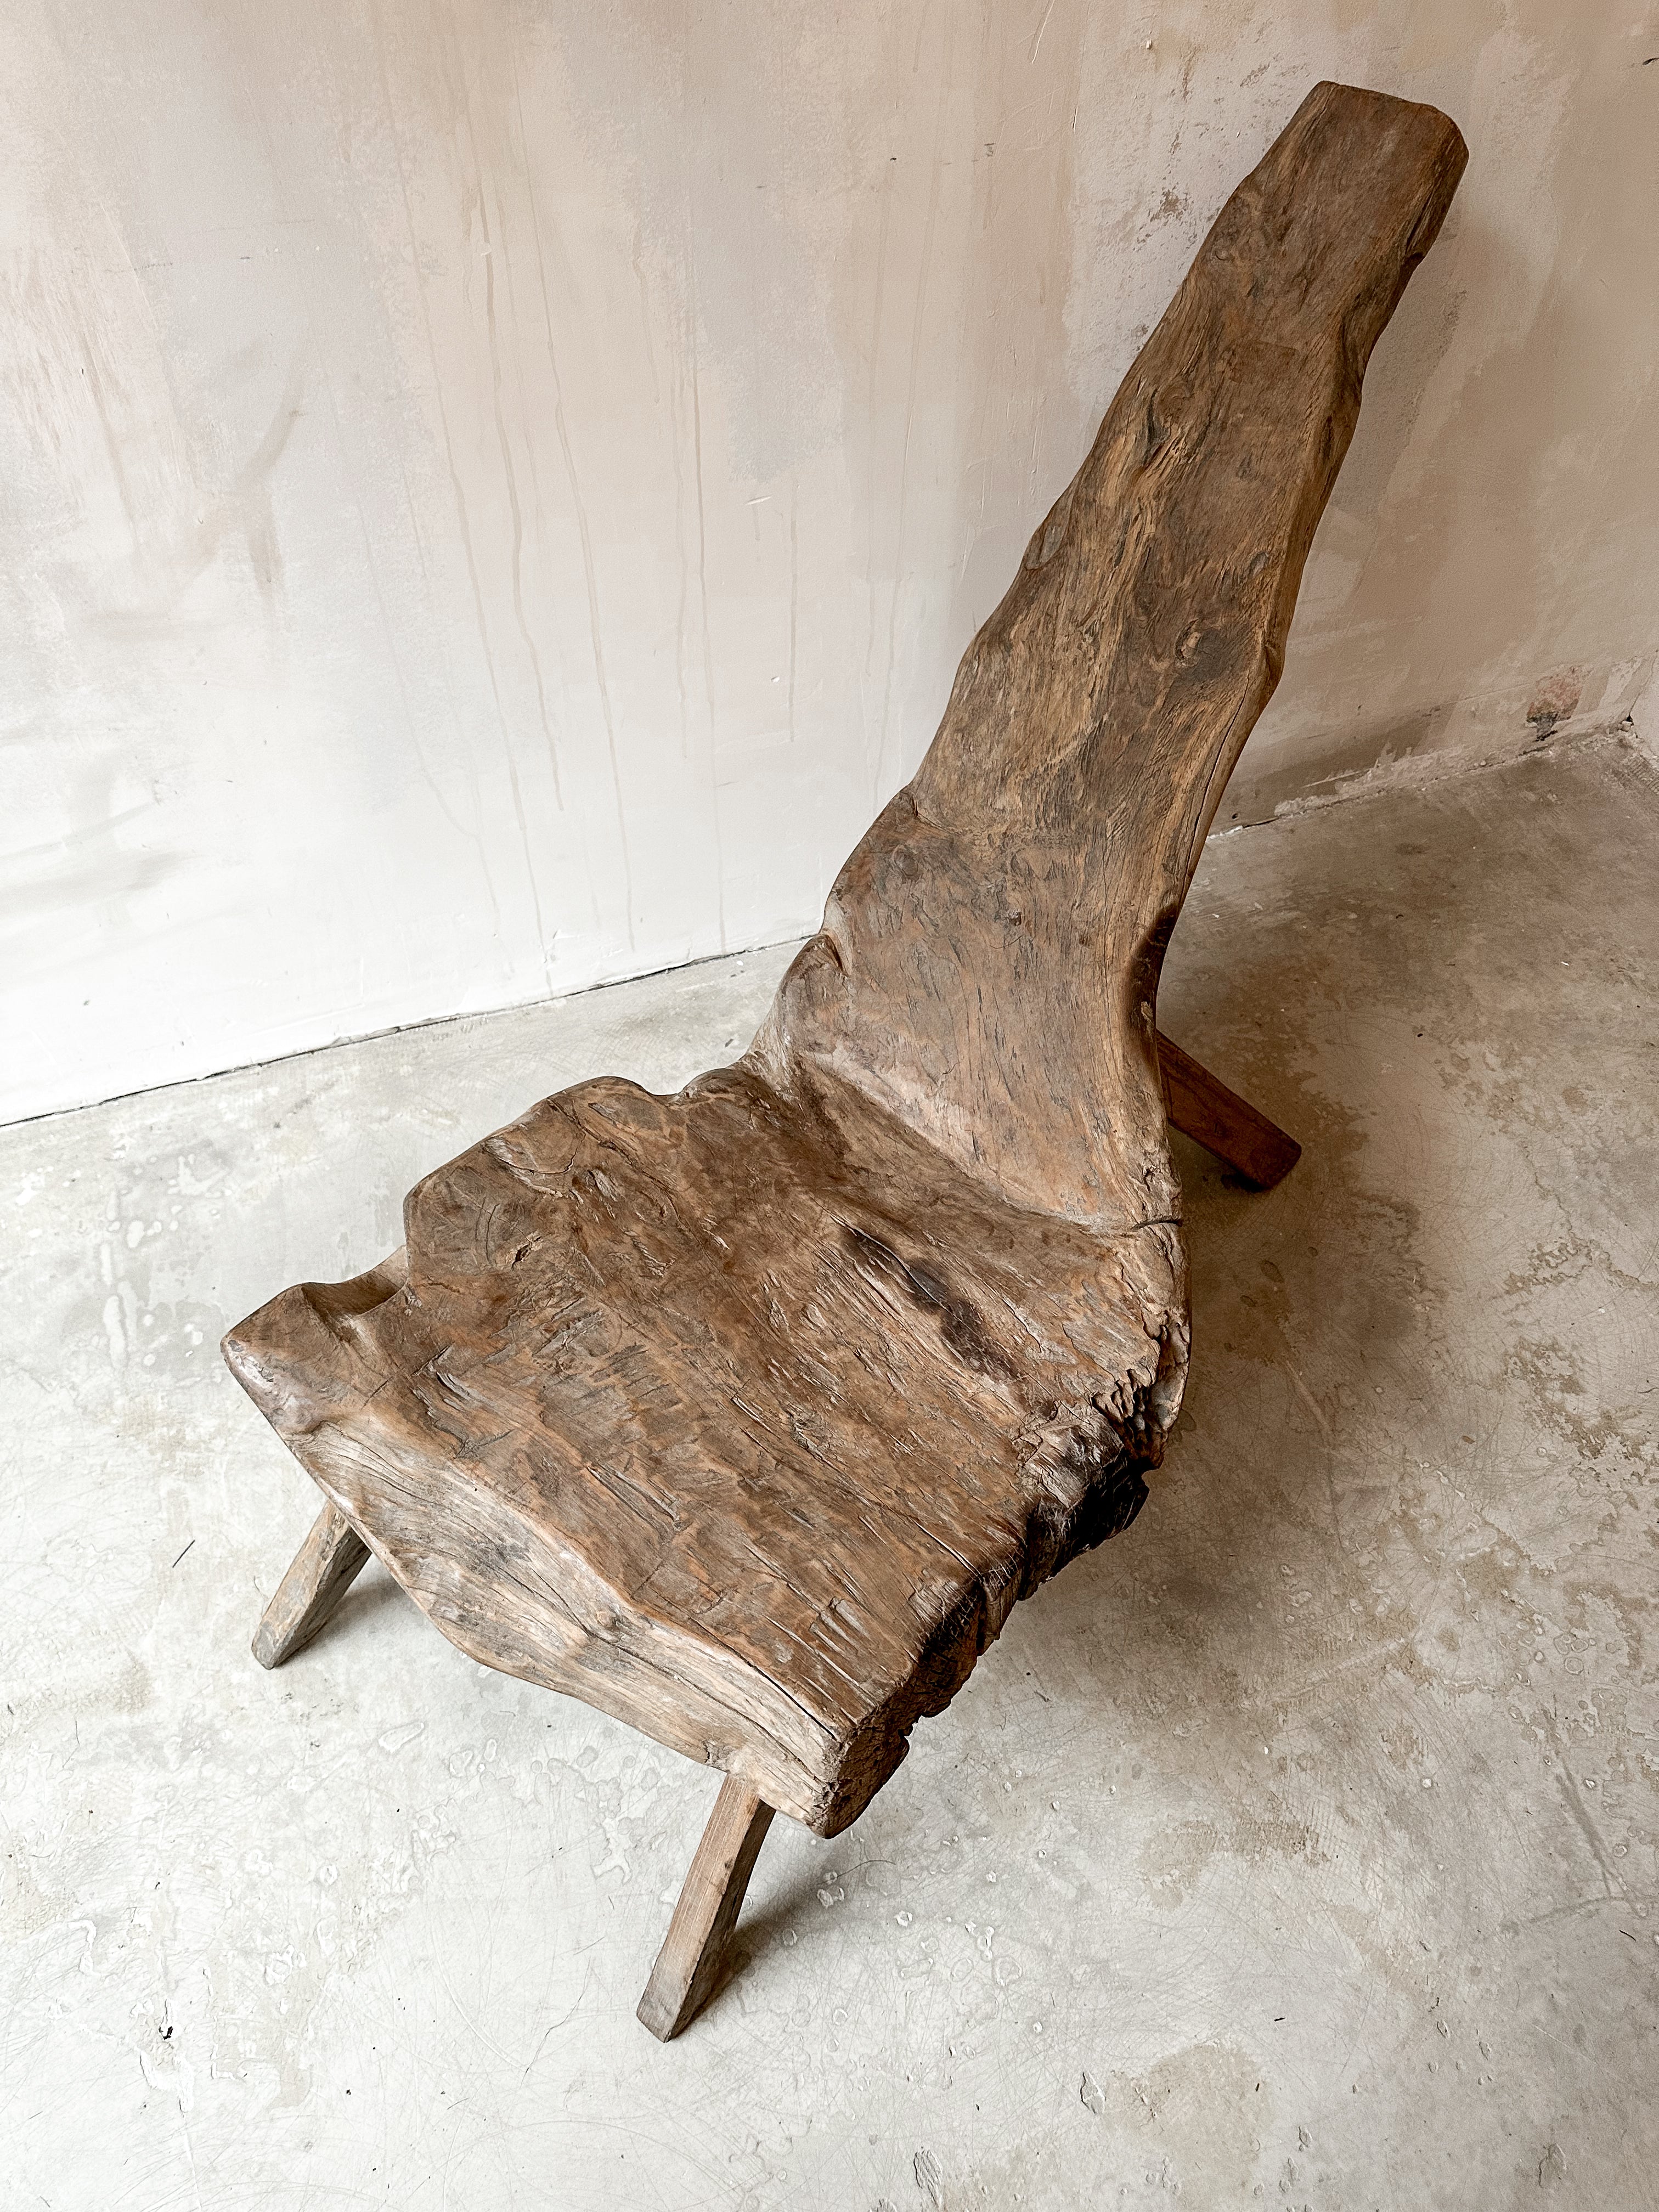 The primitive teak chair